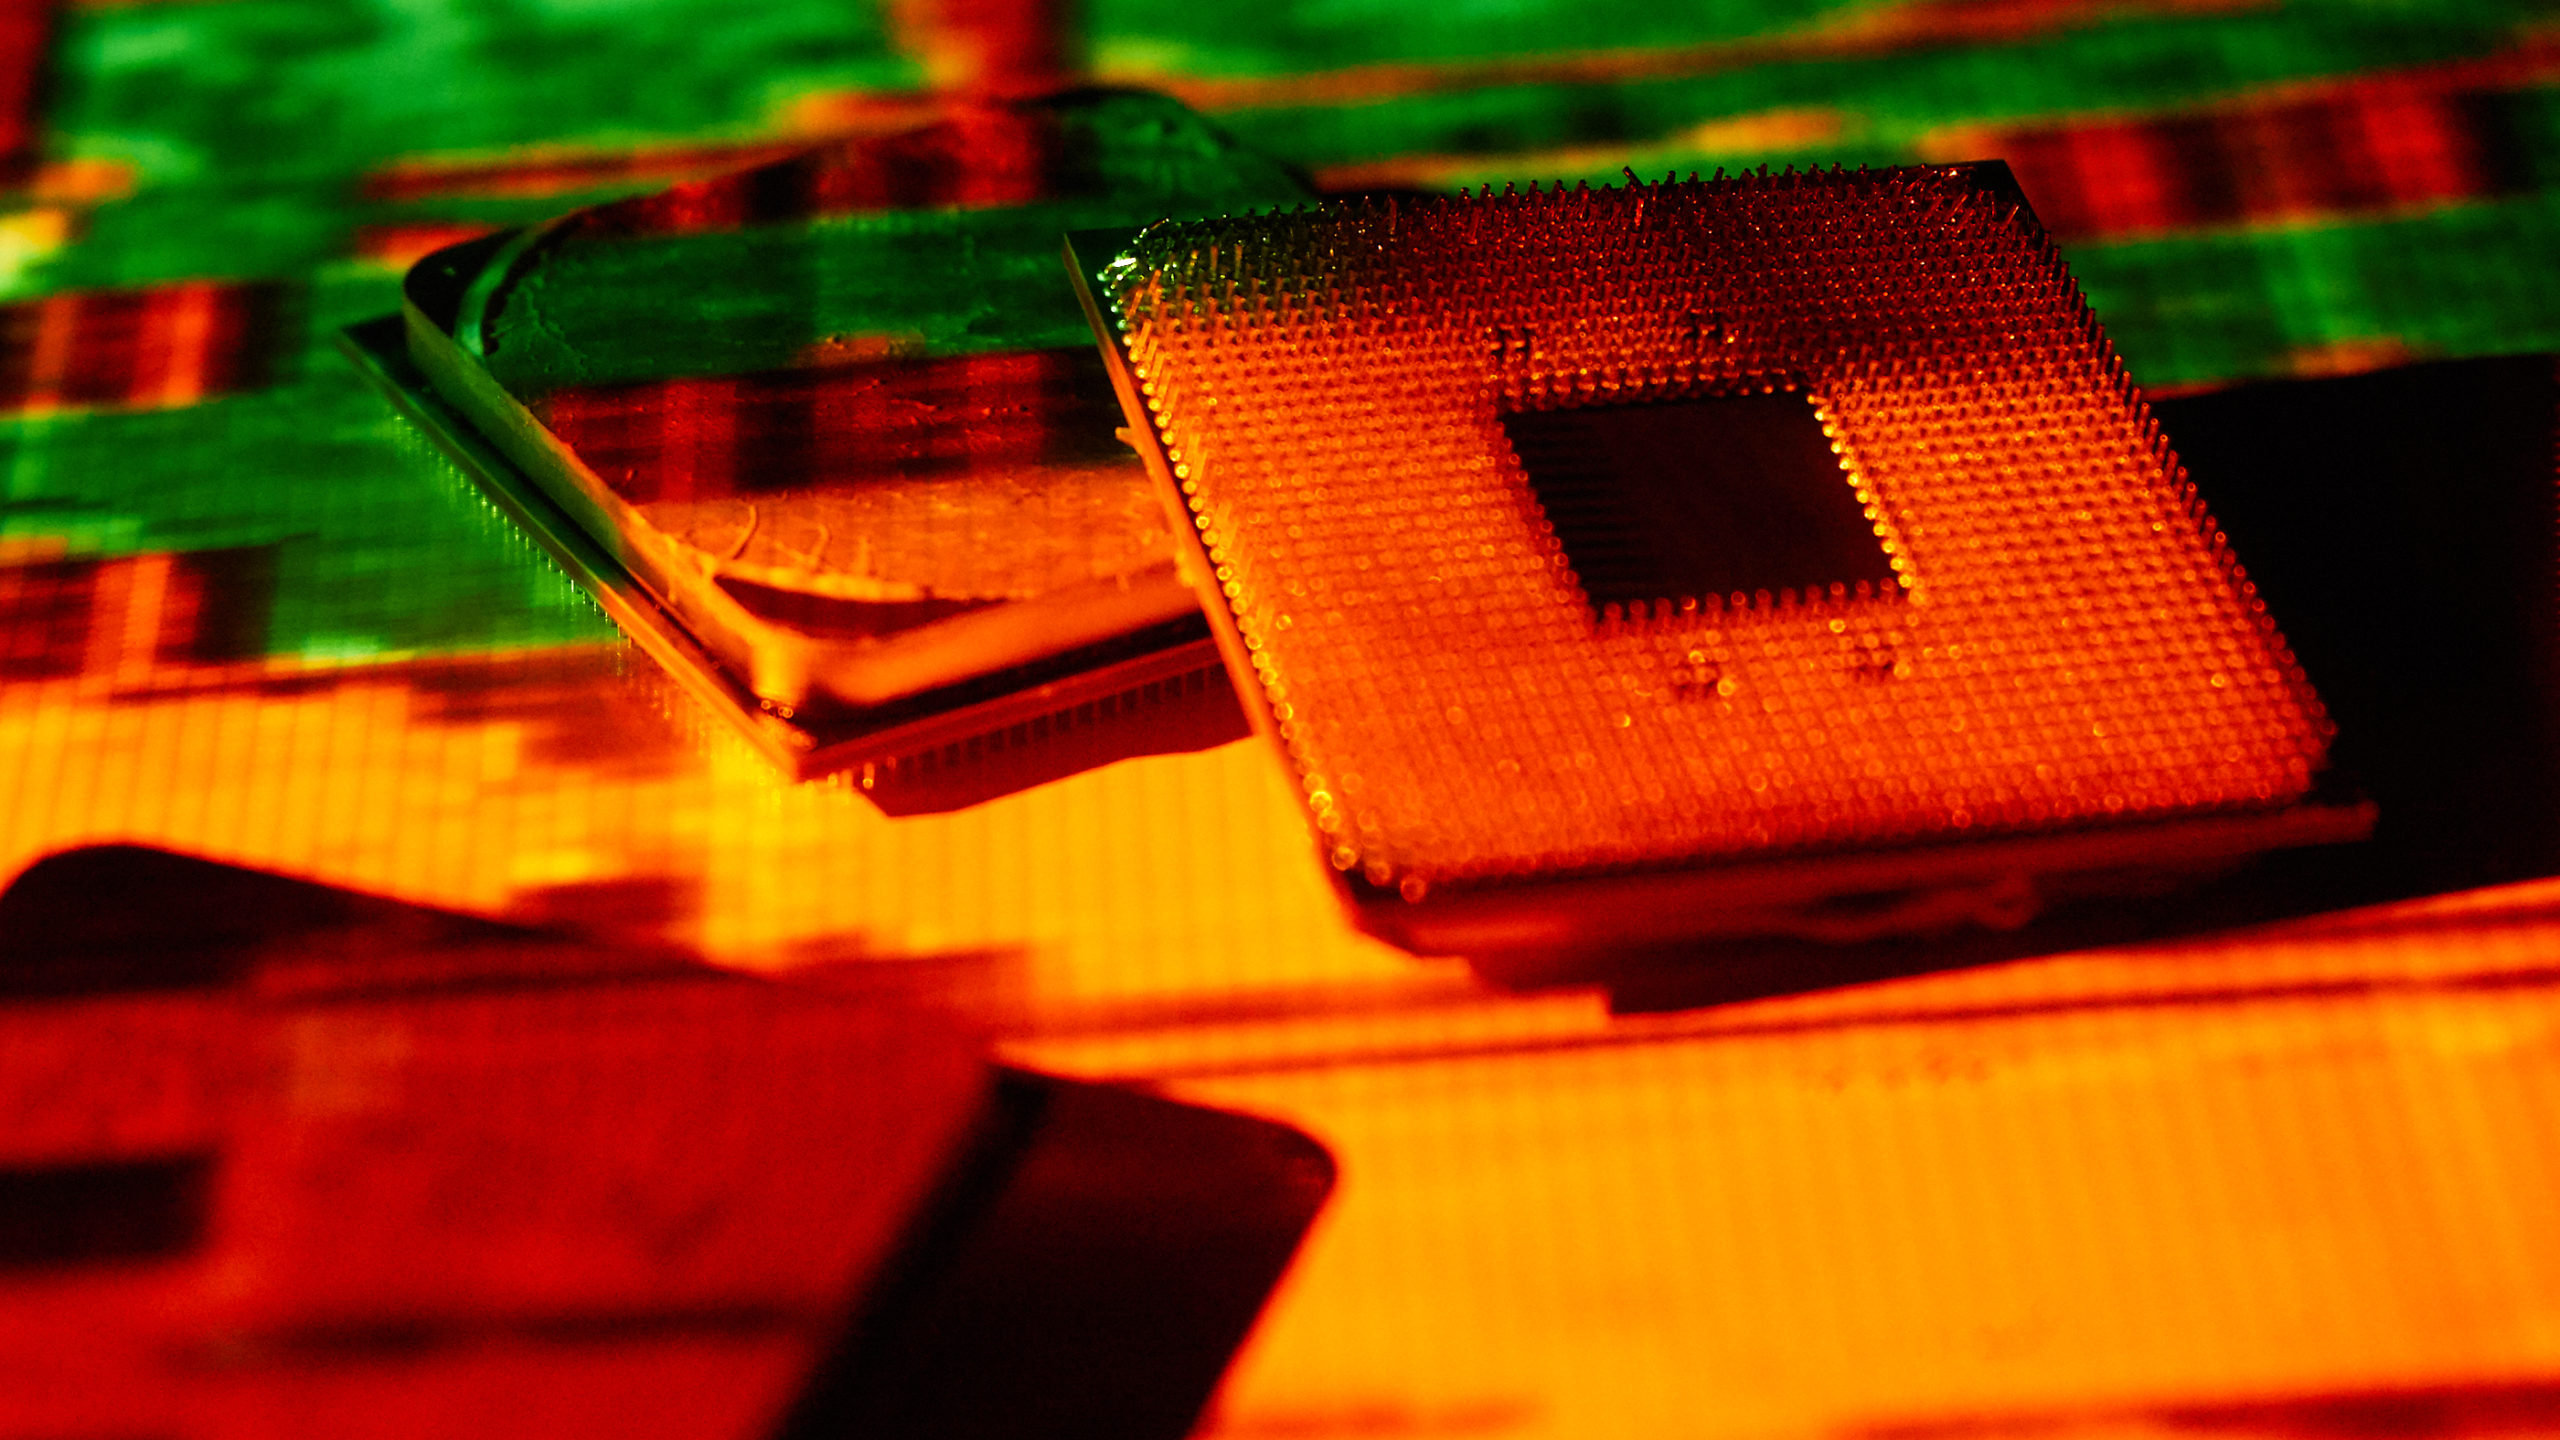 Pinos dobrados de processadores AMD. Crédito: Alex Cranz/Gizmodo